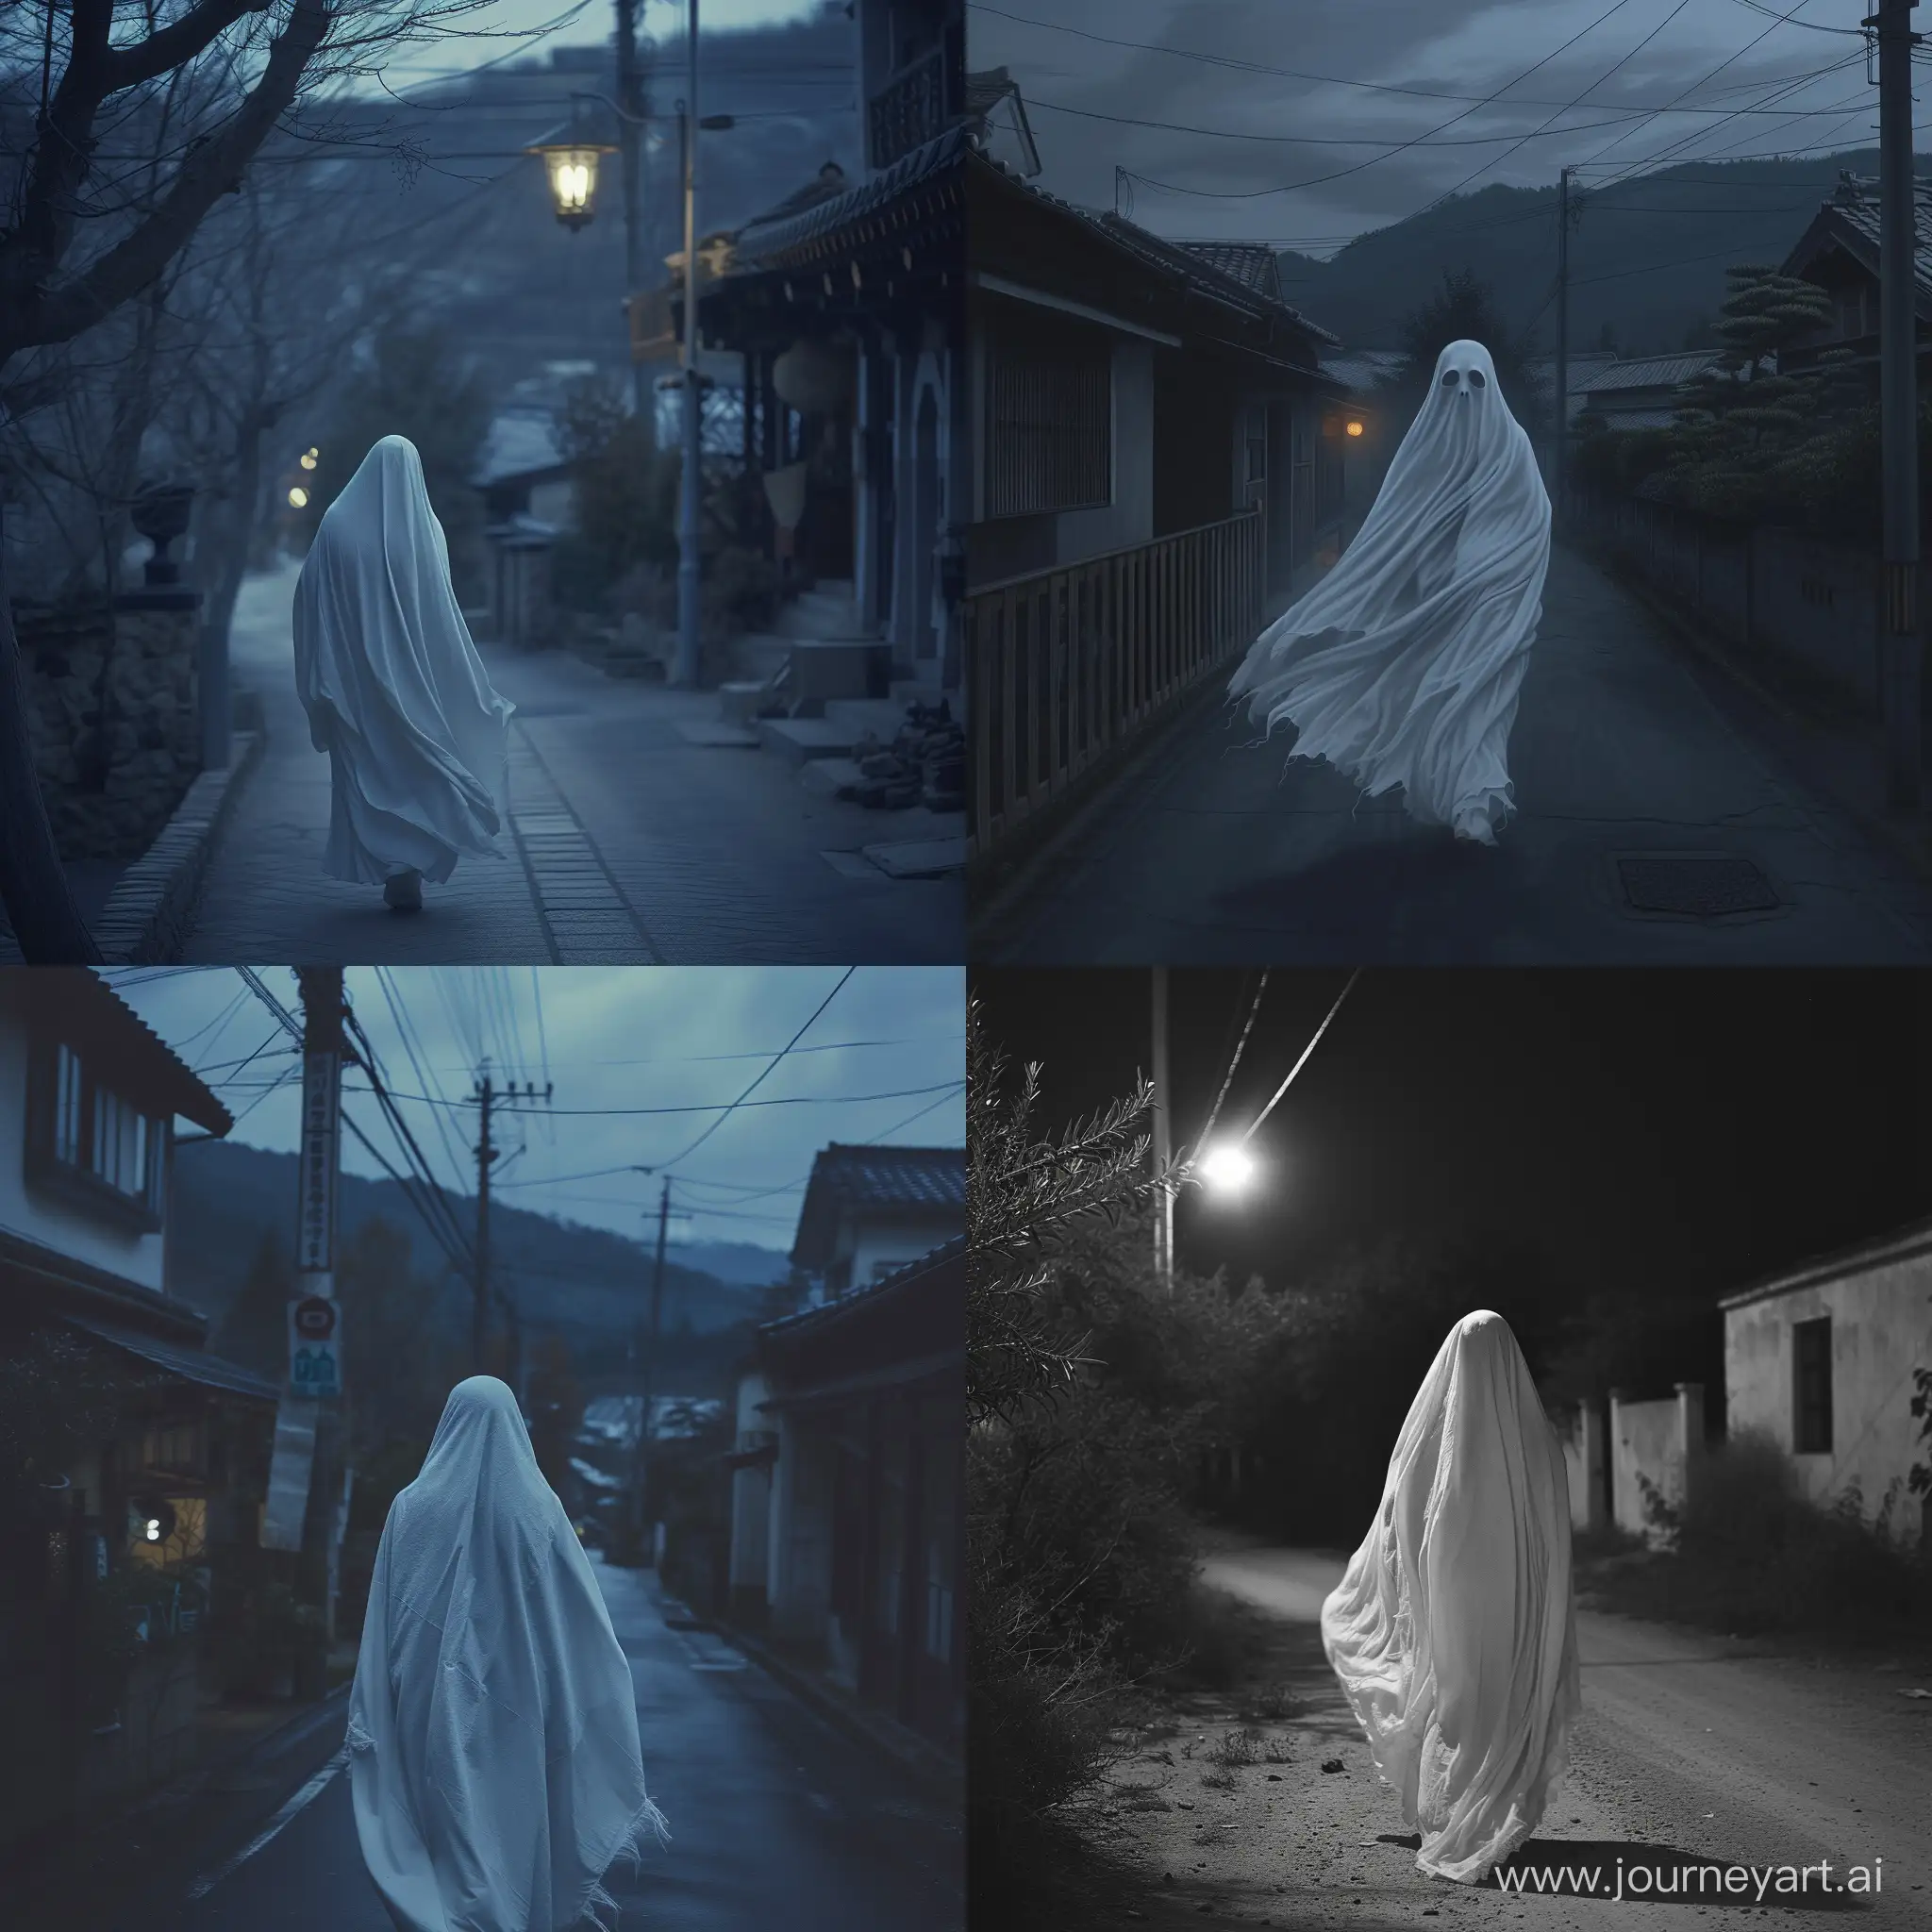 Призрачная девушка закутанная в белый саван скользит вдоль ночной деревенской улицы.  